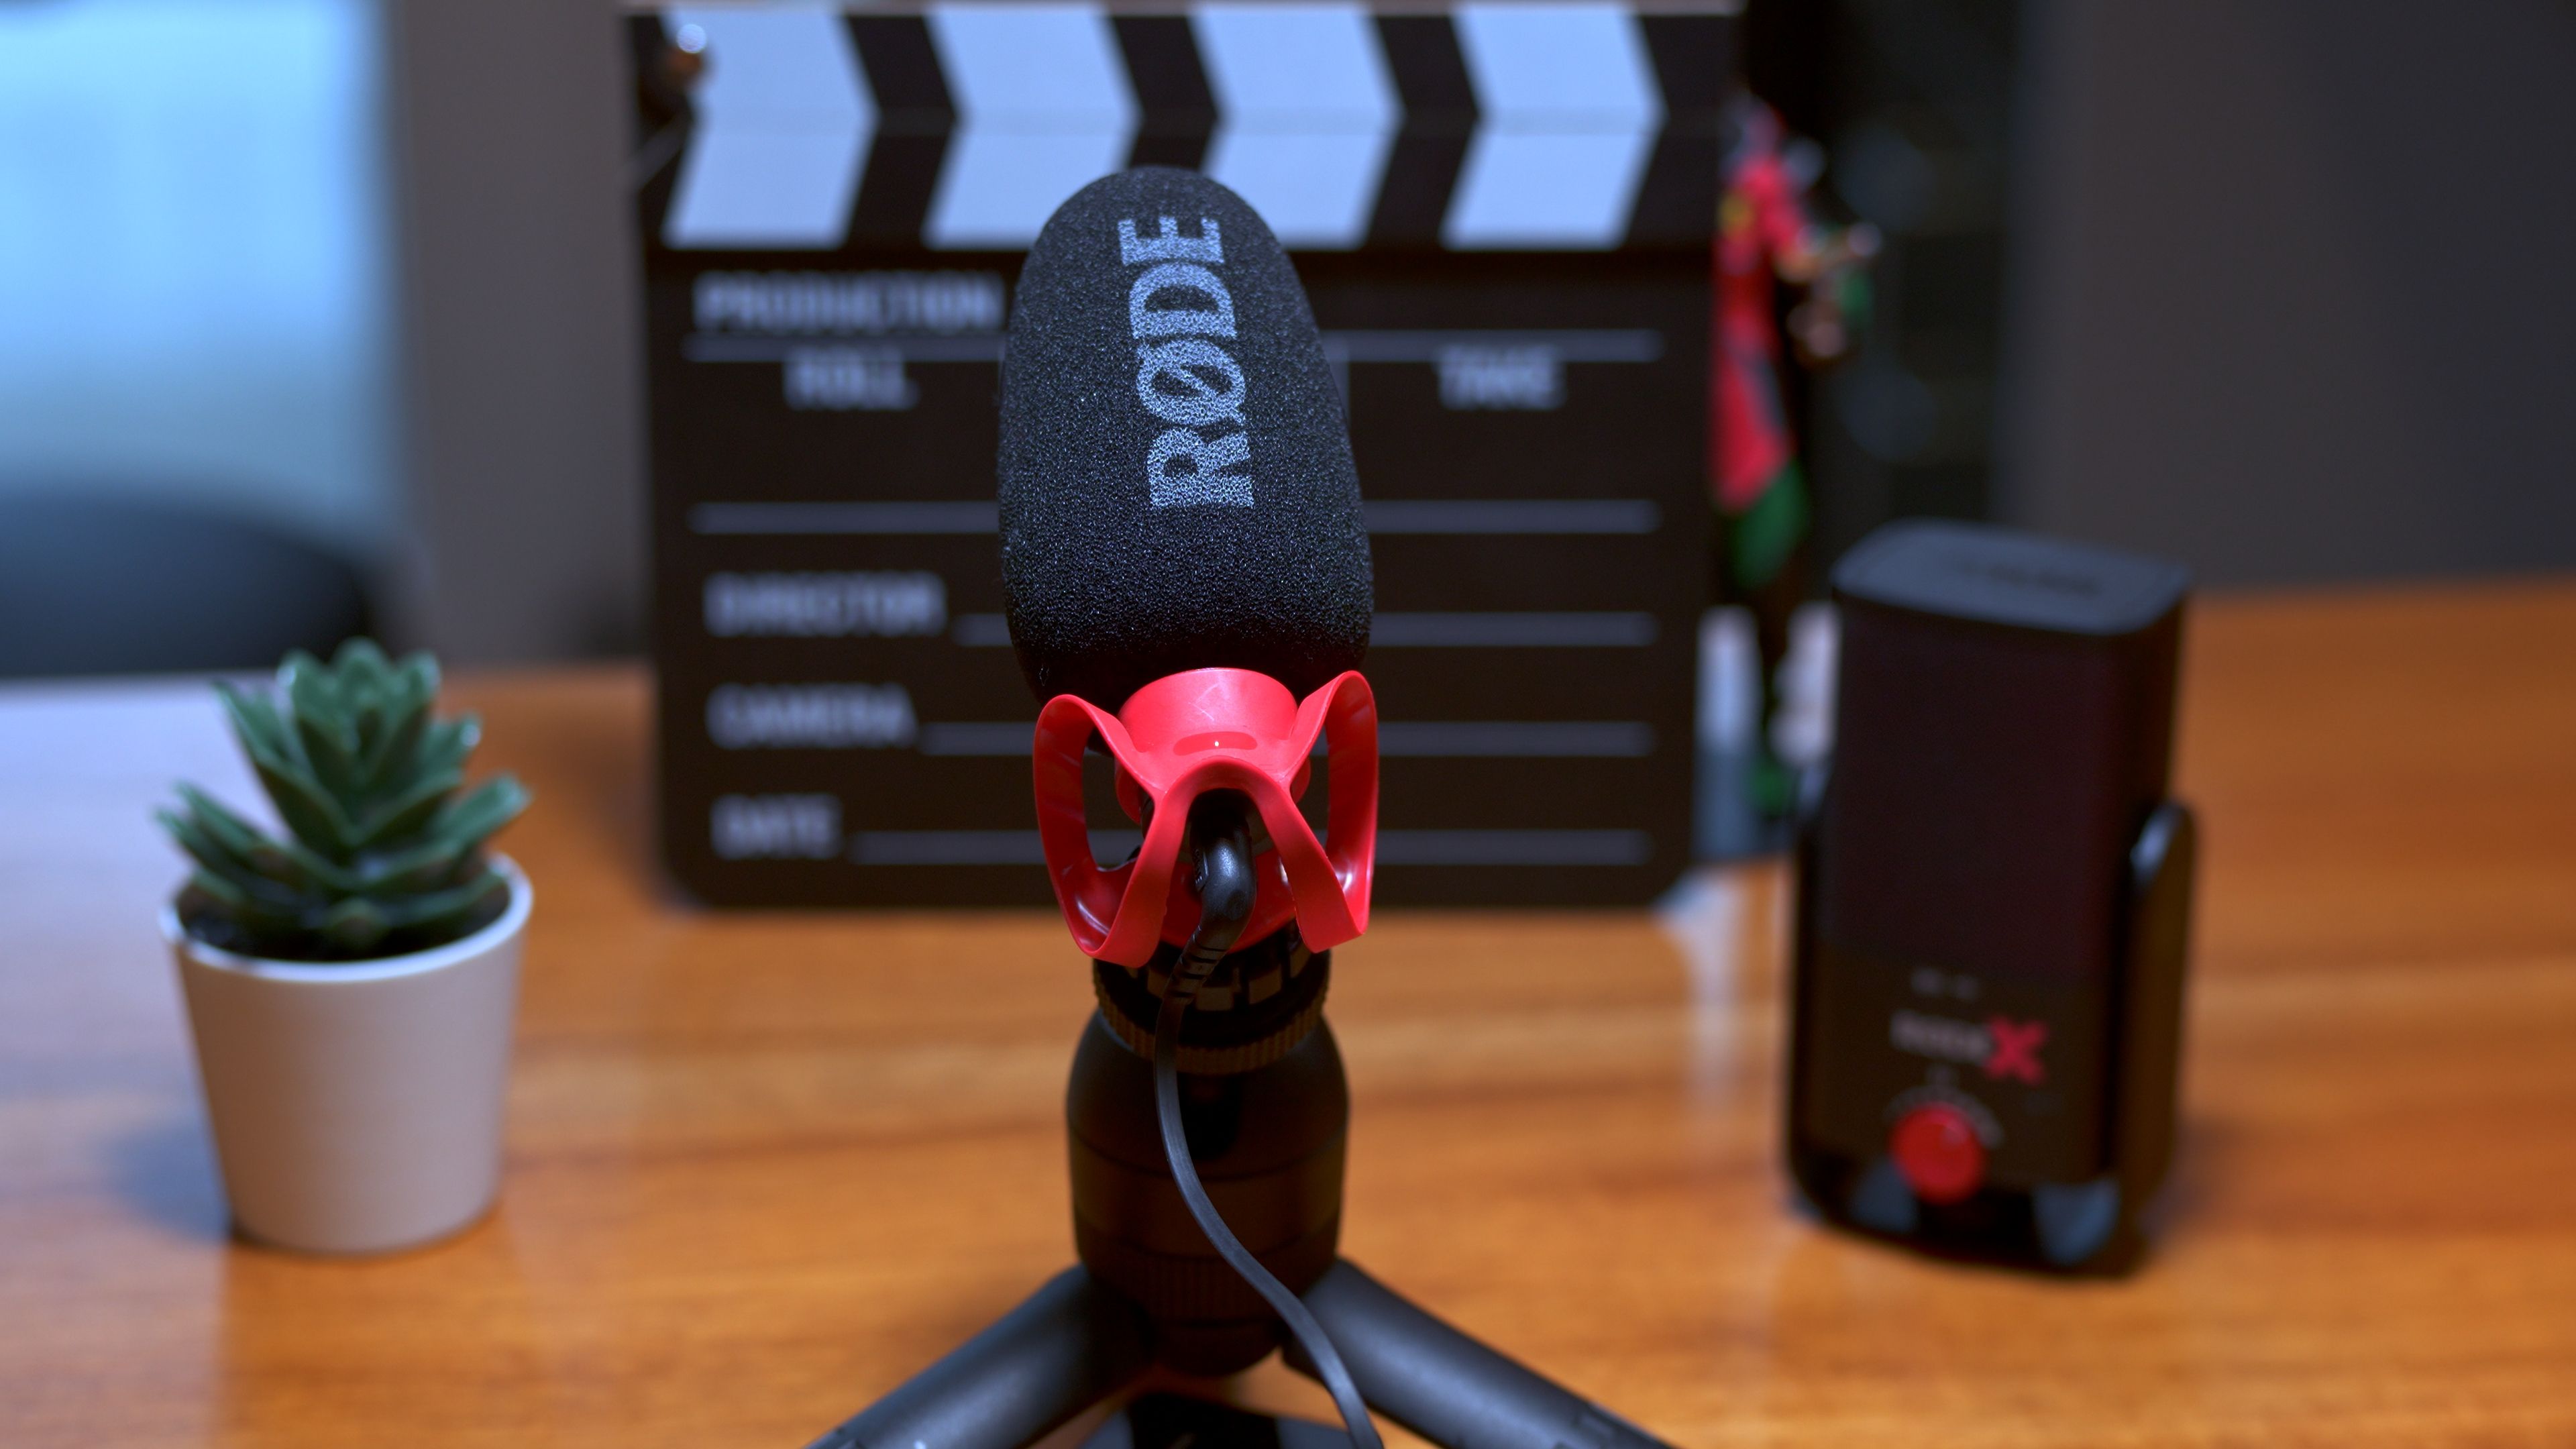 RØDE VIDEOMIC GO II Lightweight Directional Microphone VMGOII - Best Buy